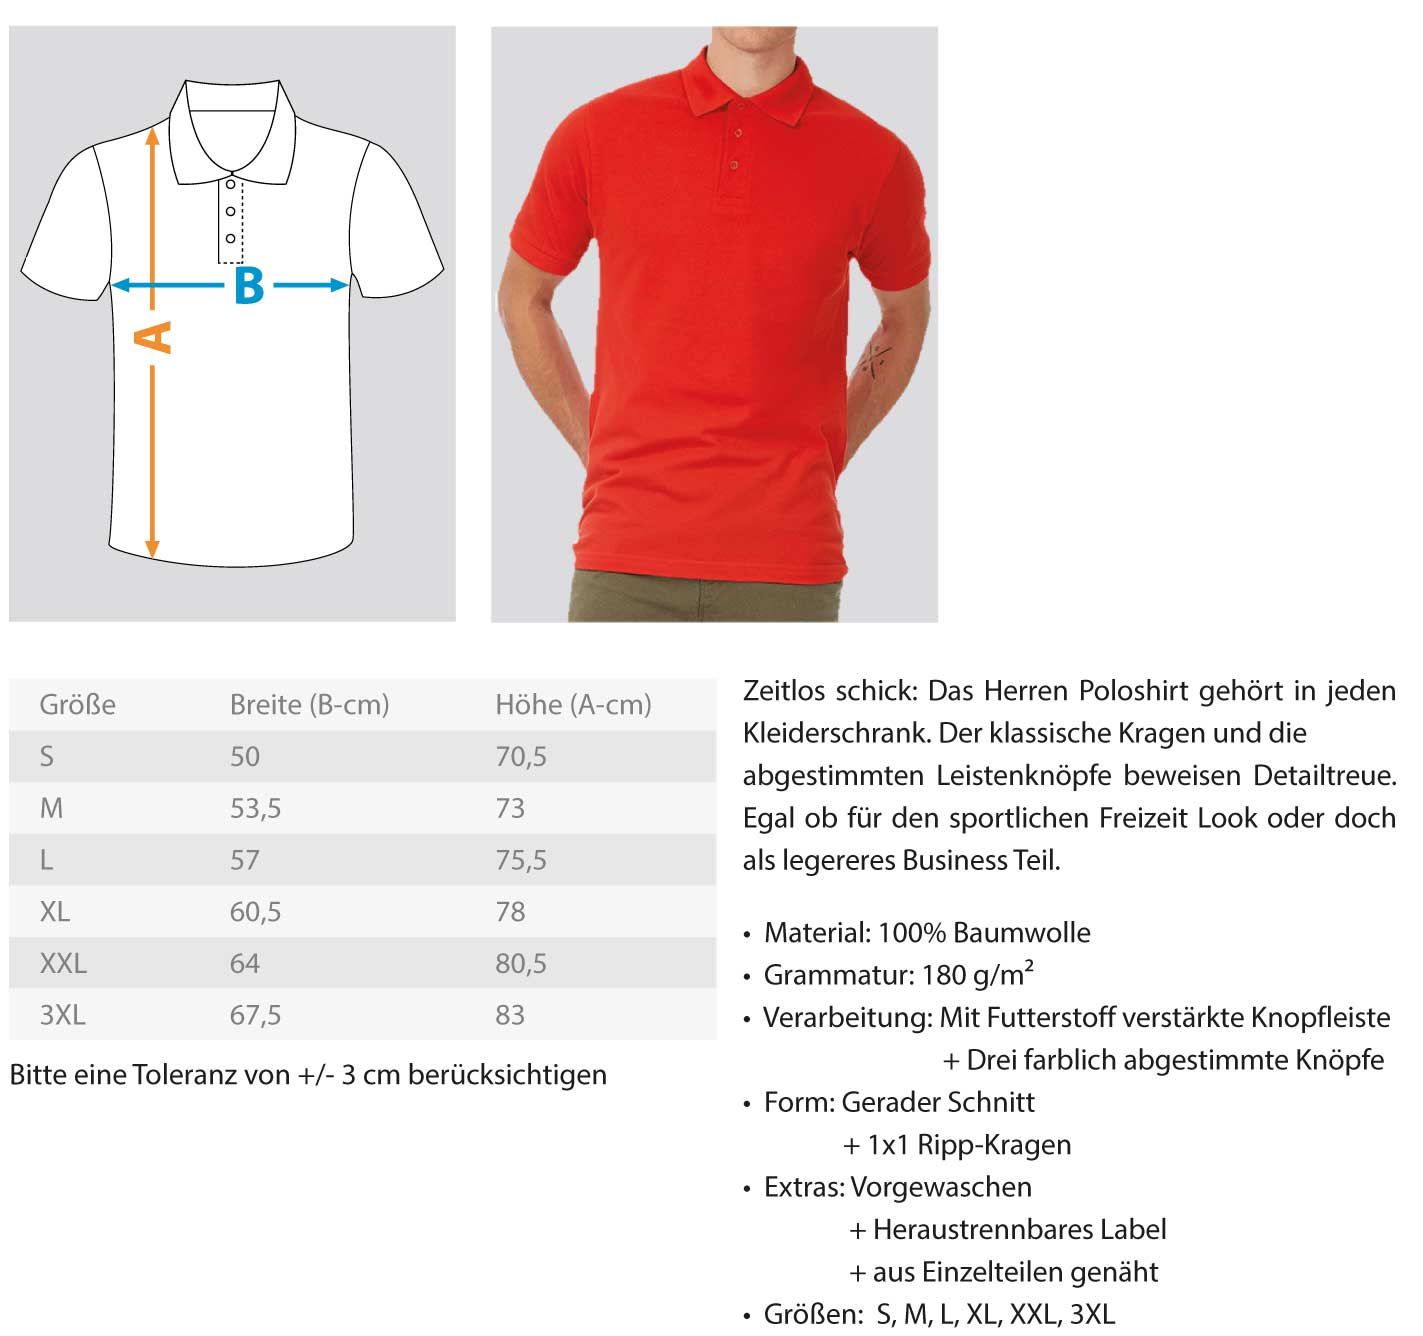 Gerüstbauer / Ratsche  - Polo Shirt €36.95 Gerüstbauer - Shop >>